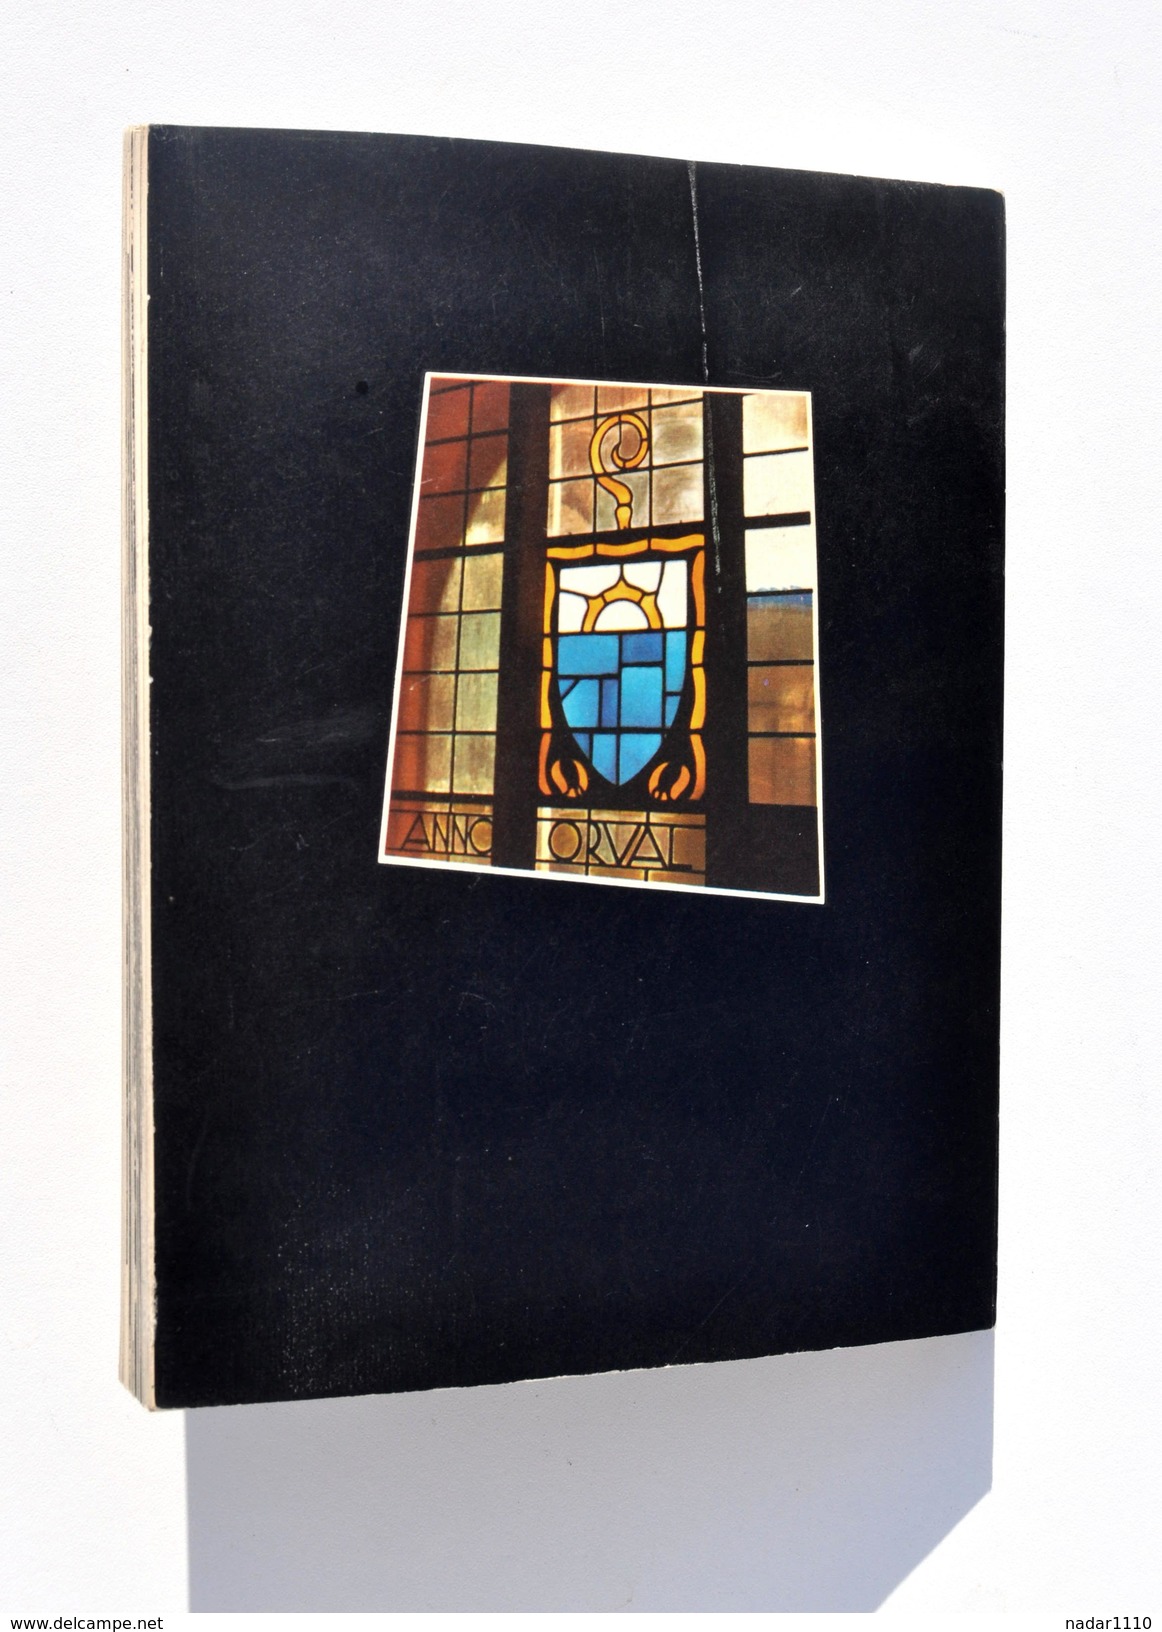 ORVAL - Edité par L'Abbaye Notre-Dame d'Orval, 1963 + IMAGE PIEUSE / Bière